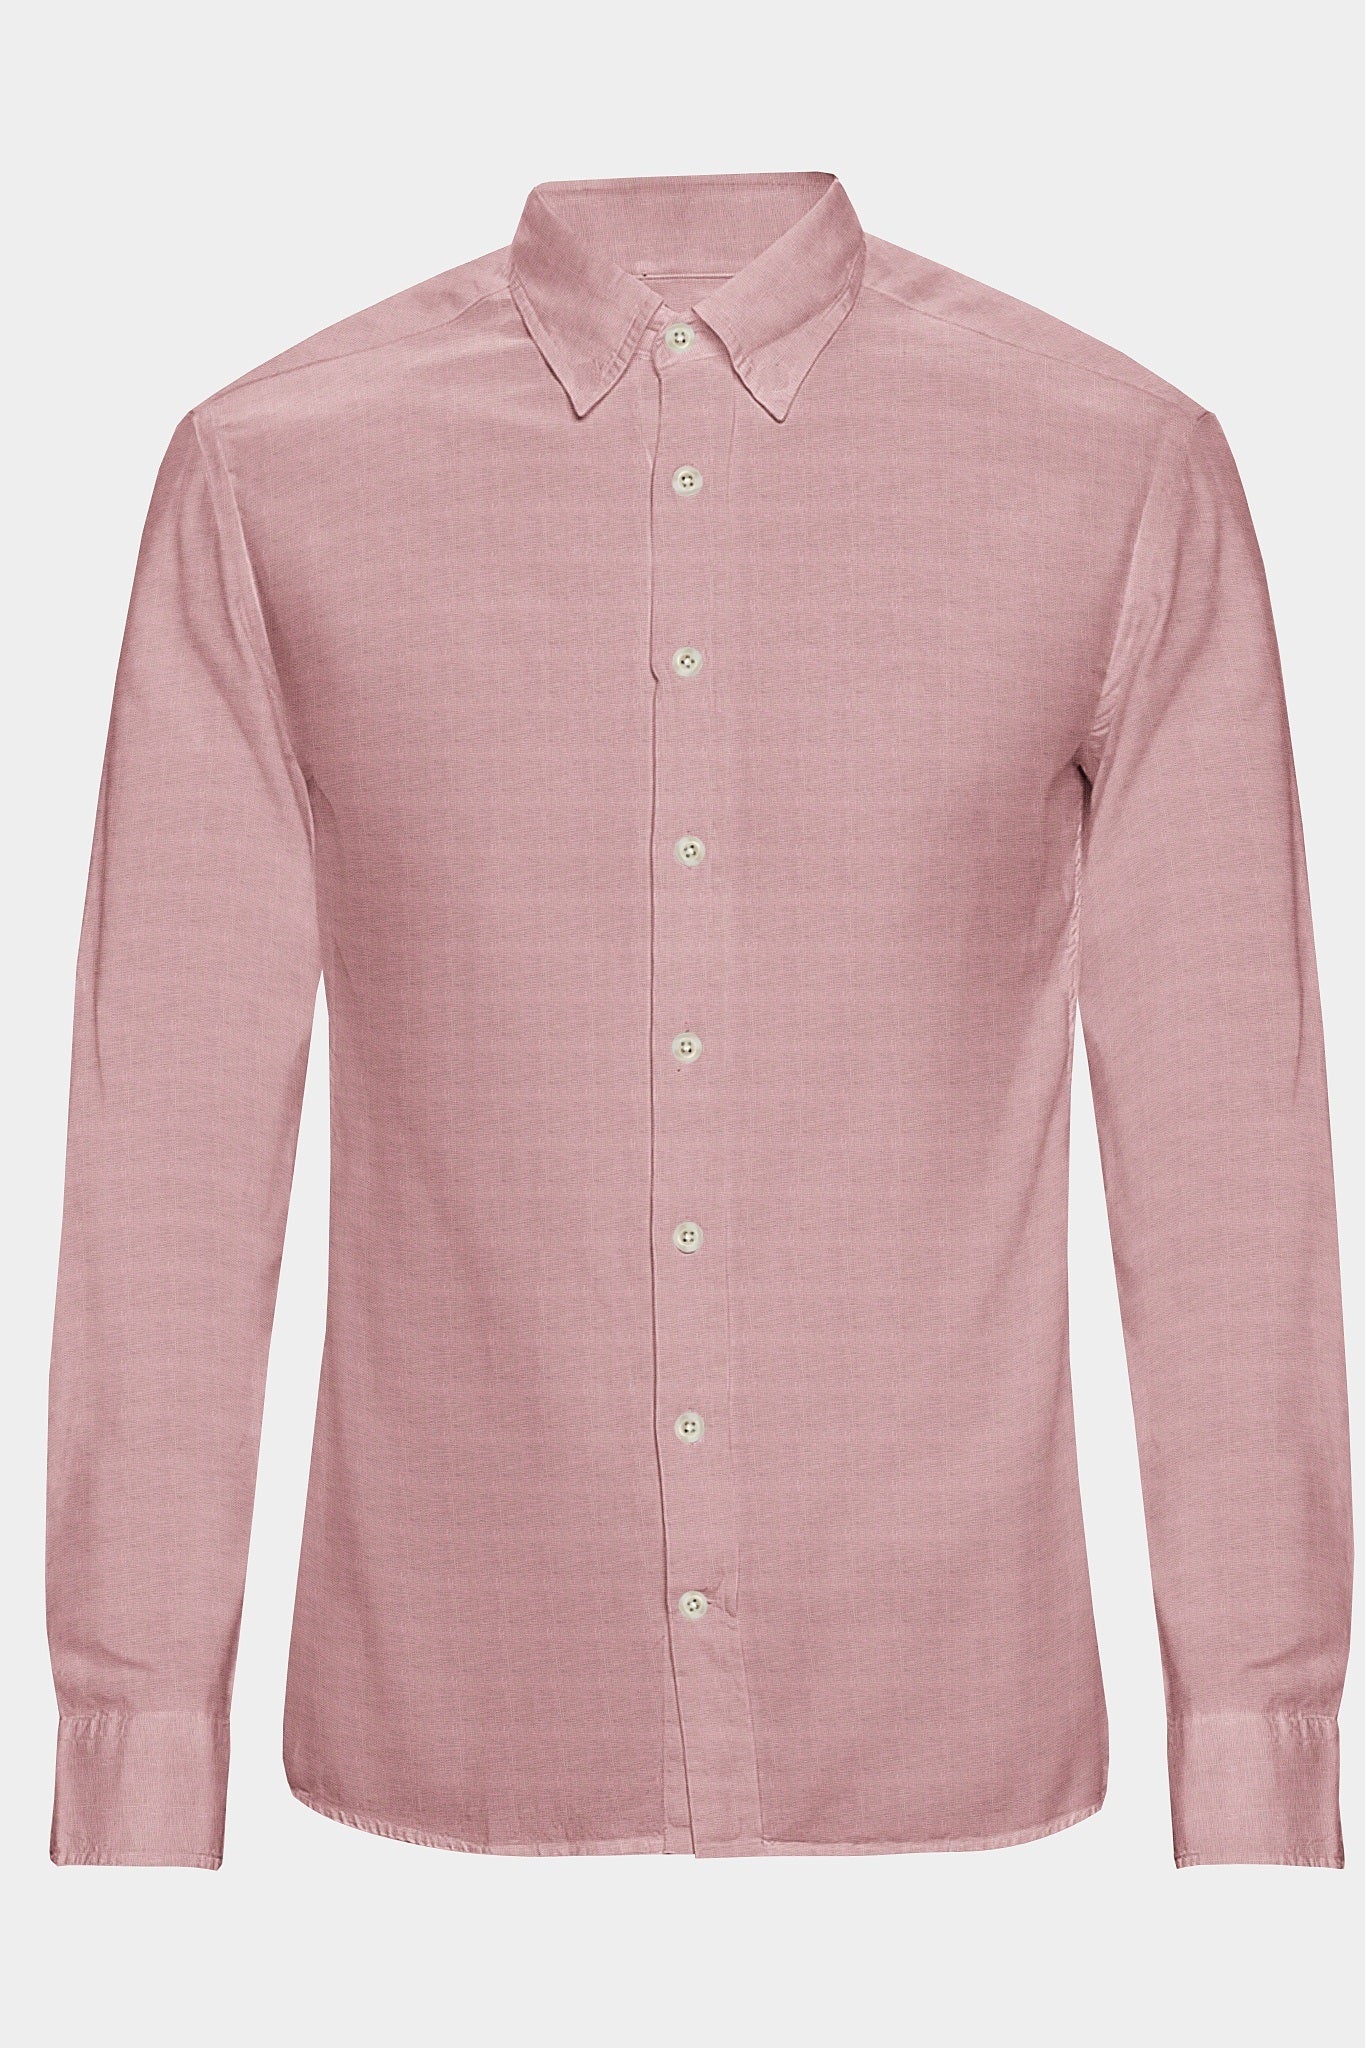 Millennial Pink Luxurious Linen Shirt